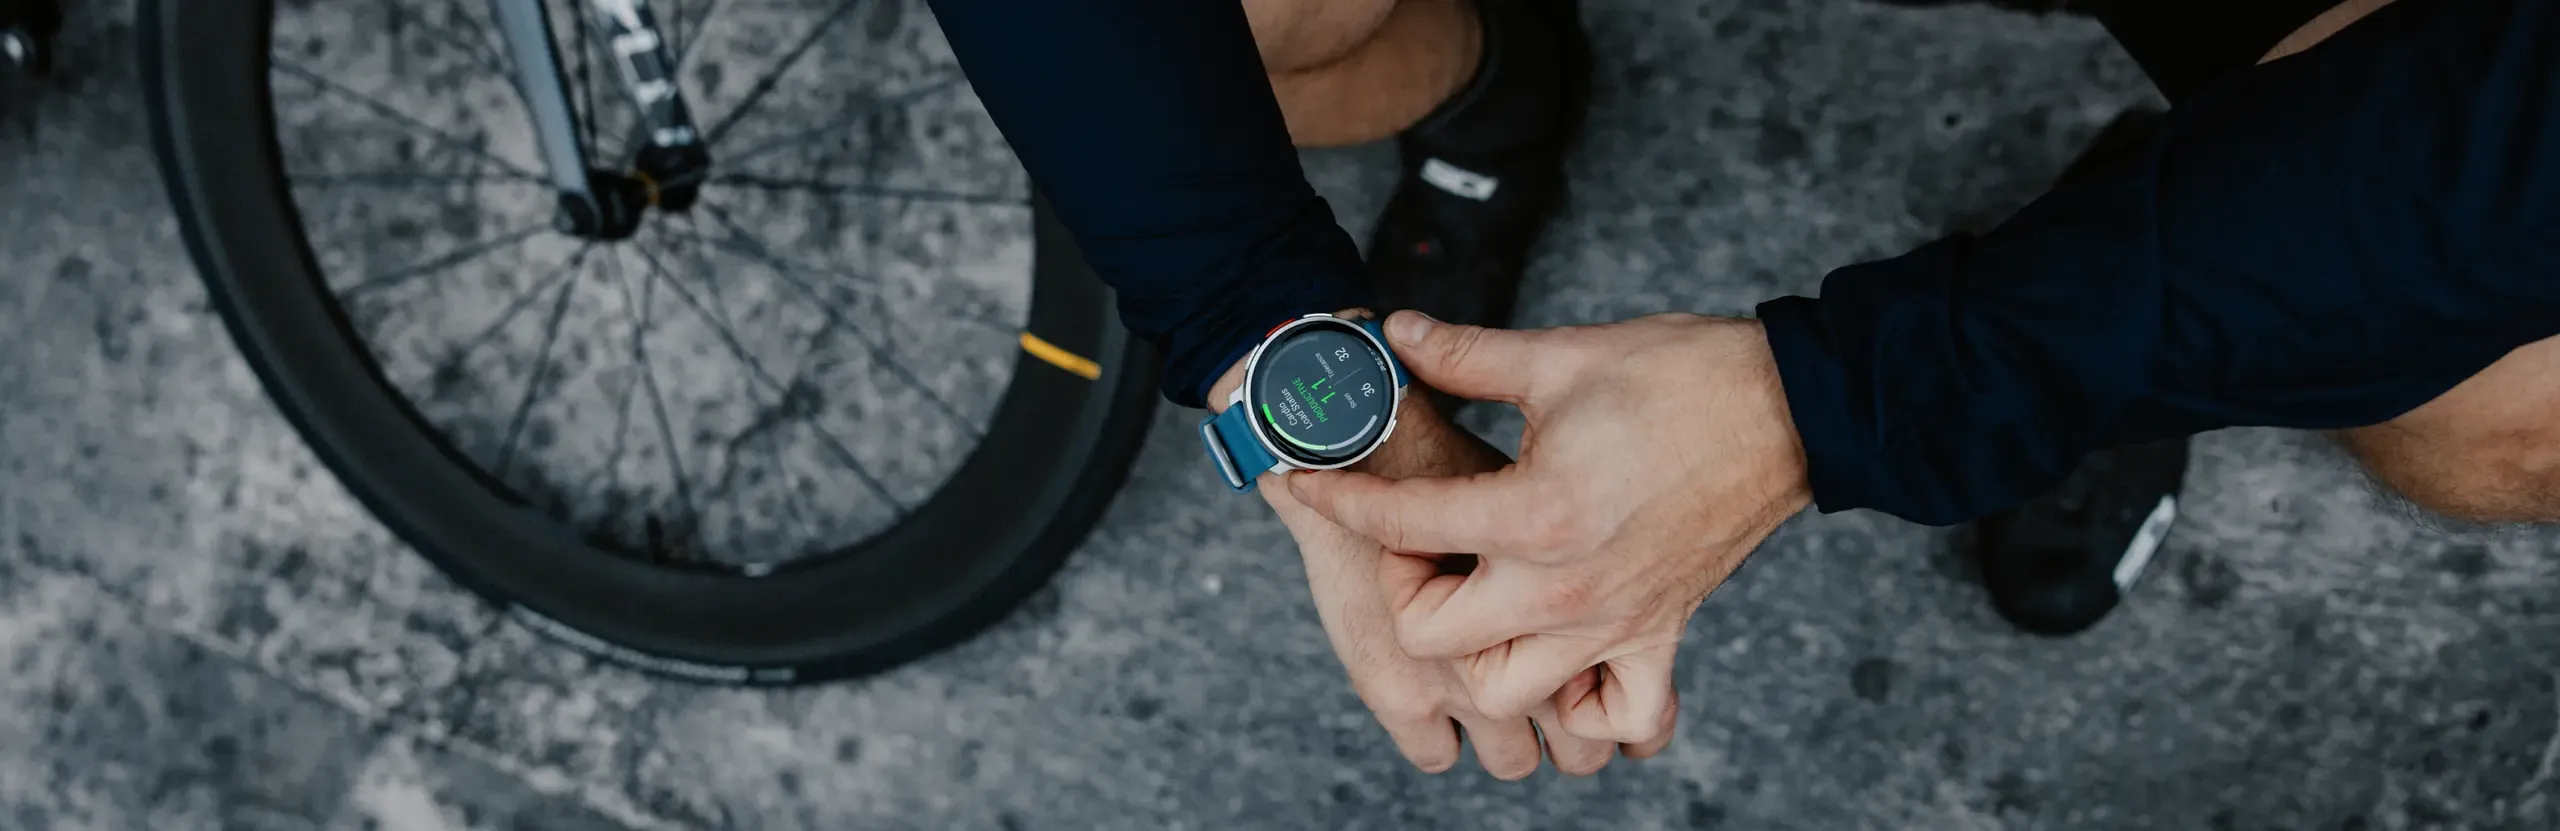 Compteurs GPS vélos et montres Garmin : on peut désormais naviguer